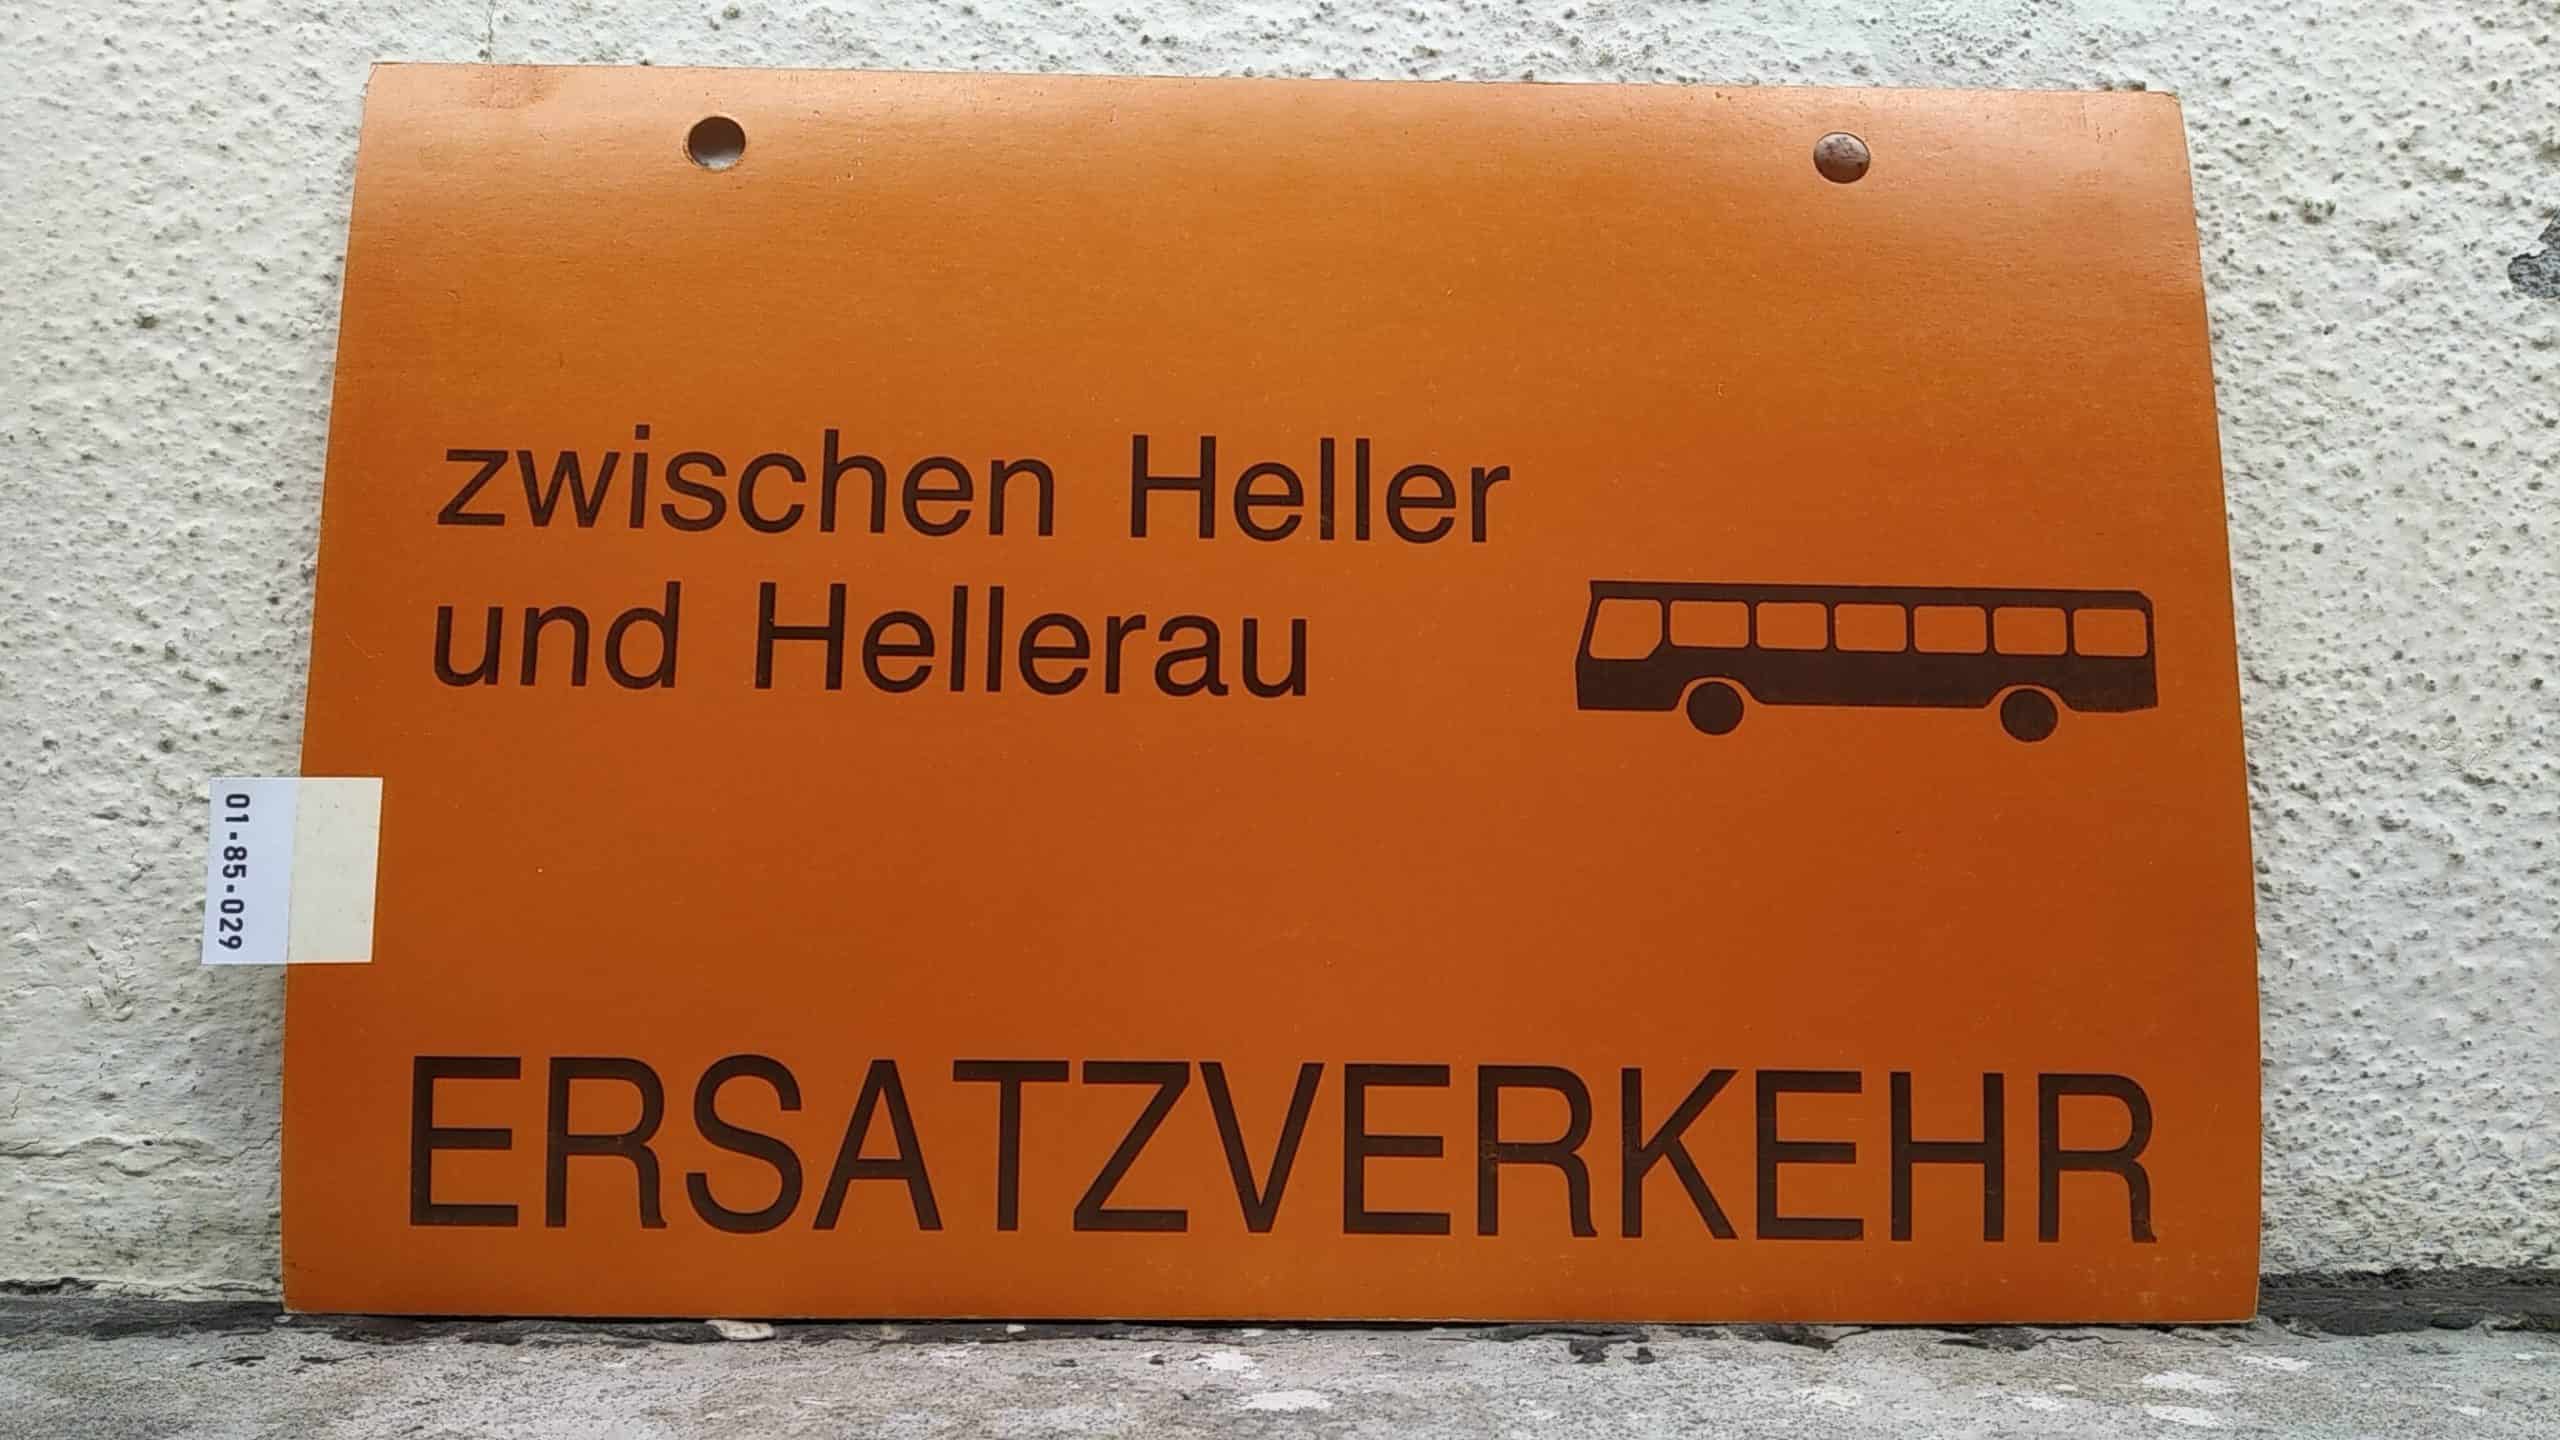 Ein seltenes Straßenbahn-Umleitungsschild aus Dresden: zwischen Heller und Hellerau [Bus neu] ERSATZVERKEHR